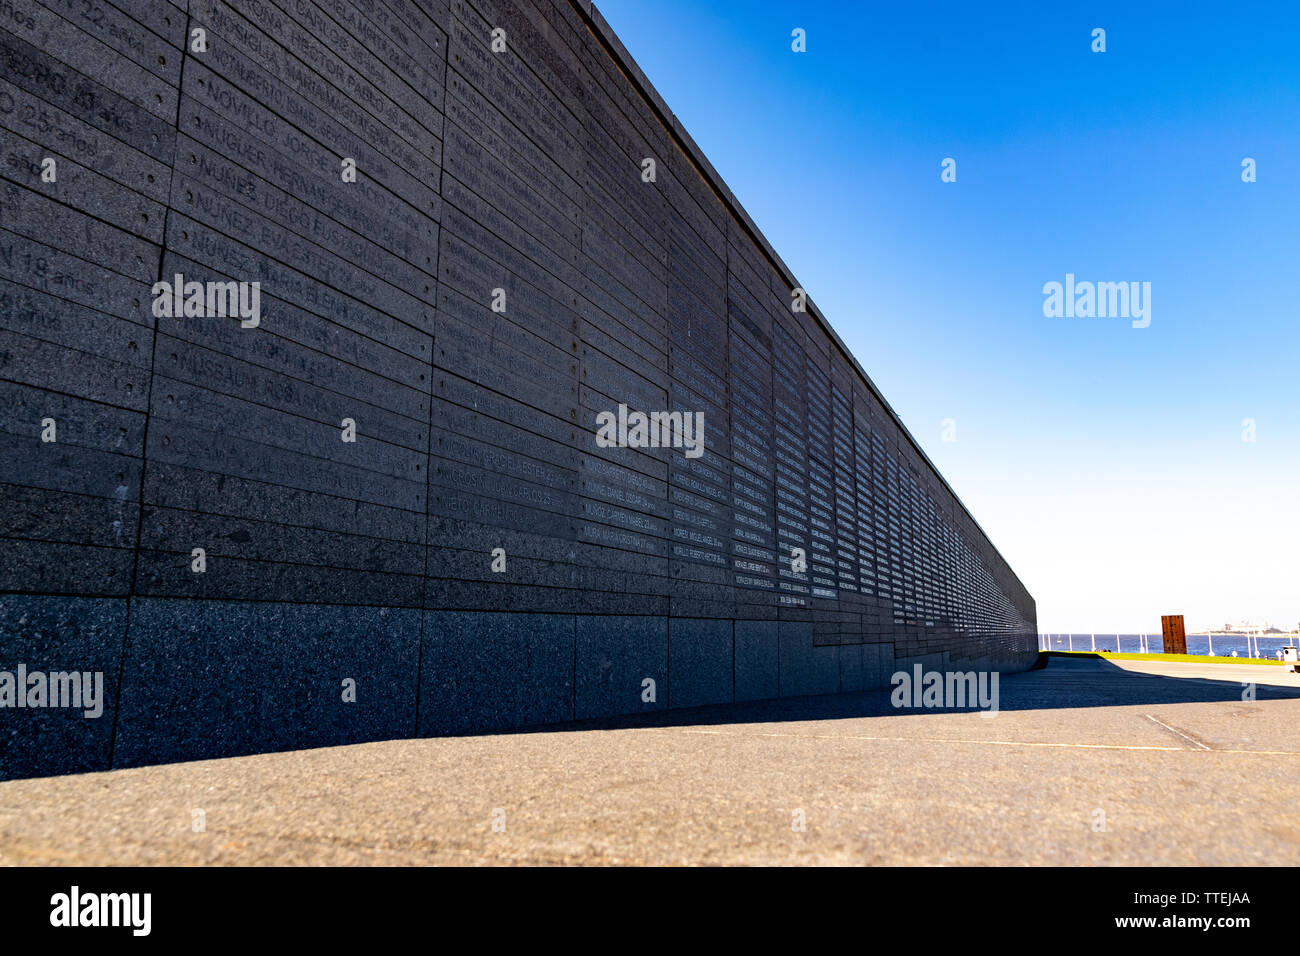 Wall in the Park of Memory. Befindet sich am Rio de la Plata in Buenos Aires City. Die Namen der Vermissten durch die letzte Diktatur in Argentinien. Stockfoto